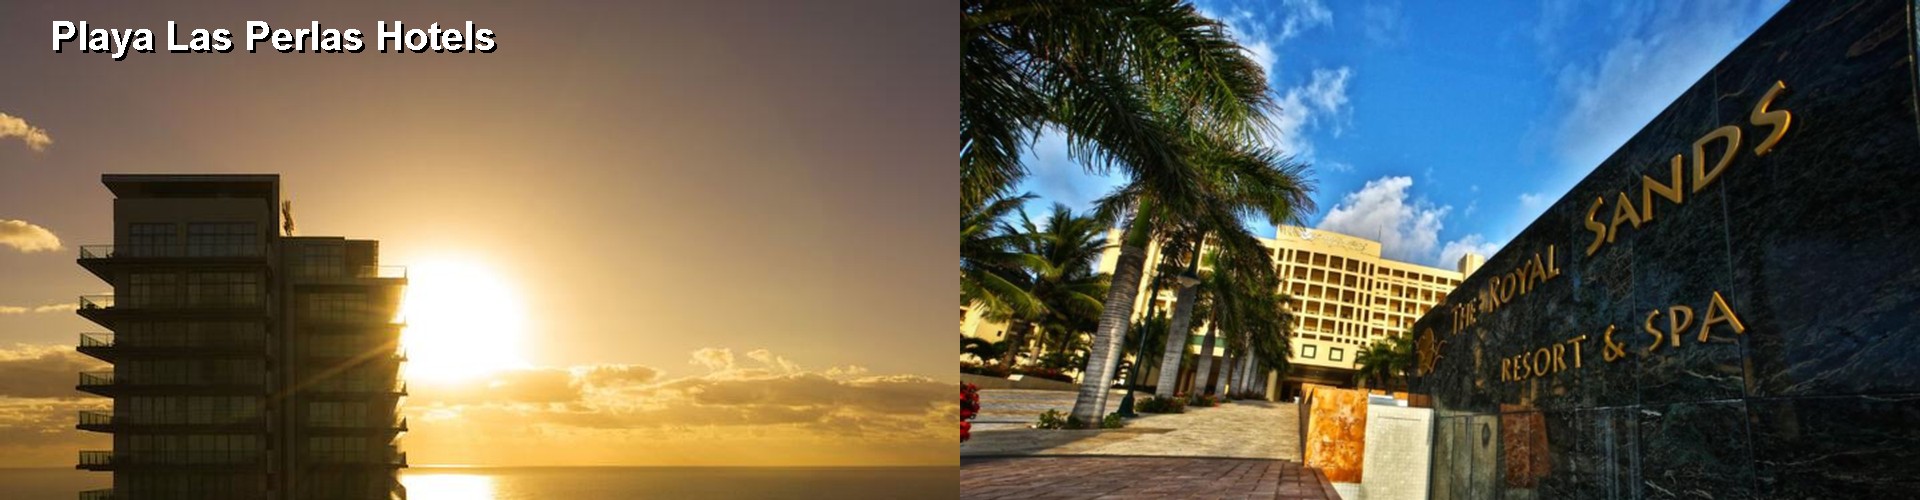 5 Best Hotels near Playa Las Perlas